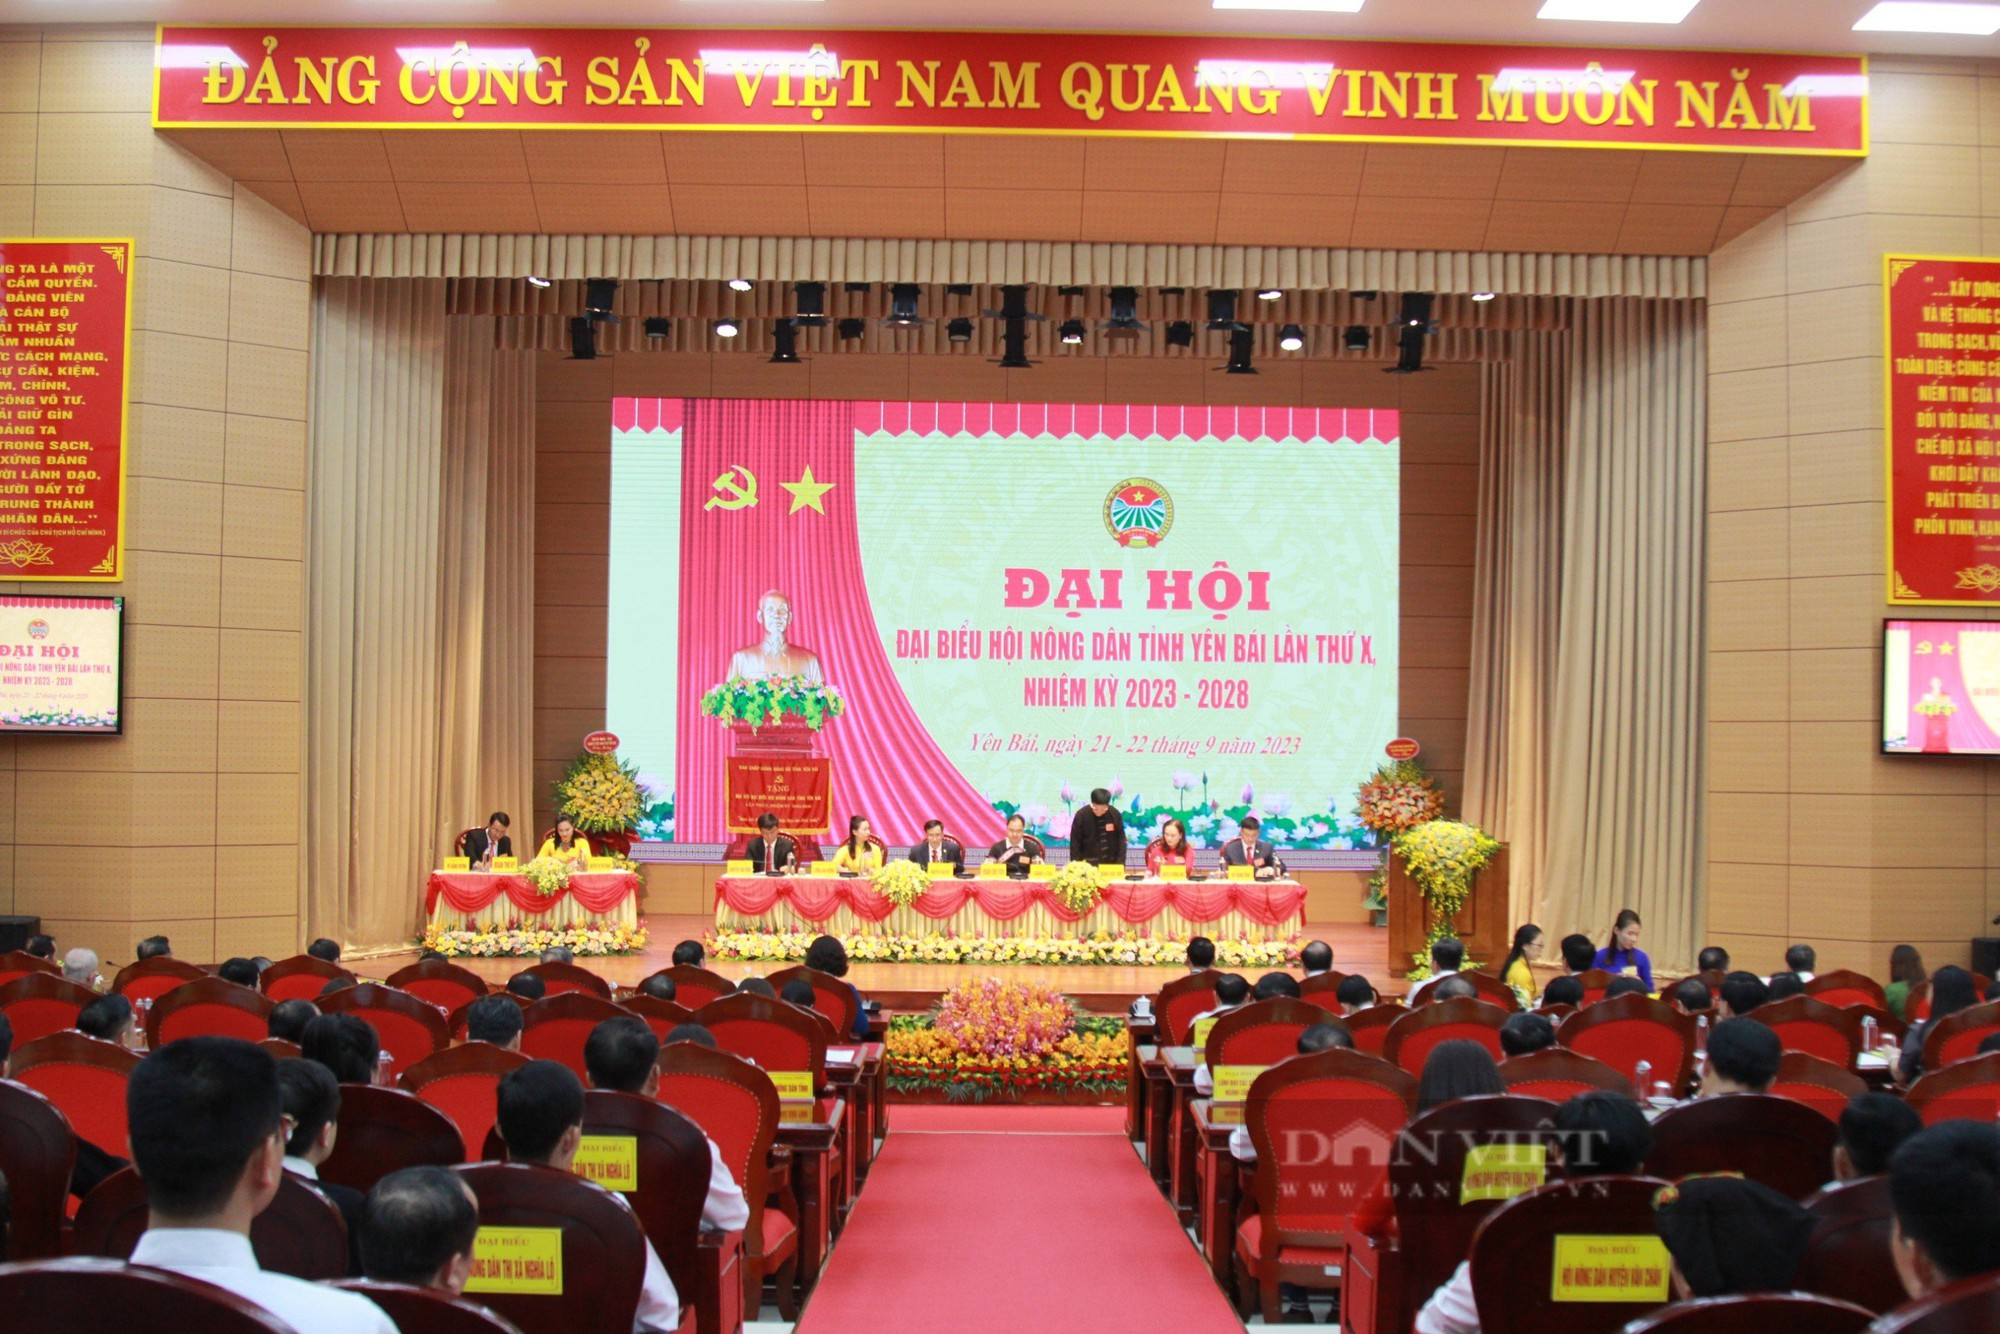 Phó Chủ tịch Hội NDVN Bùi Thị Thơm: Hội Nông dân Yên Bái vận động hội viên phát huy bản sắc dân tộc- Ảnh 1.